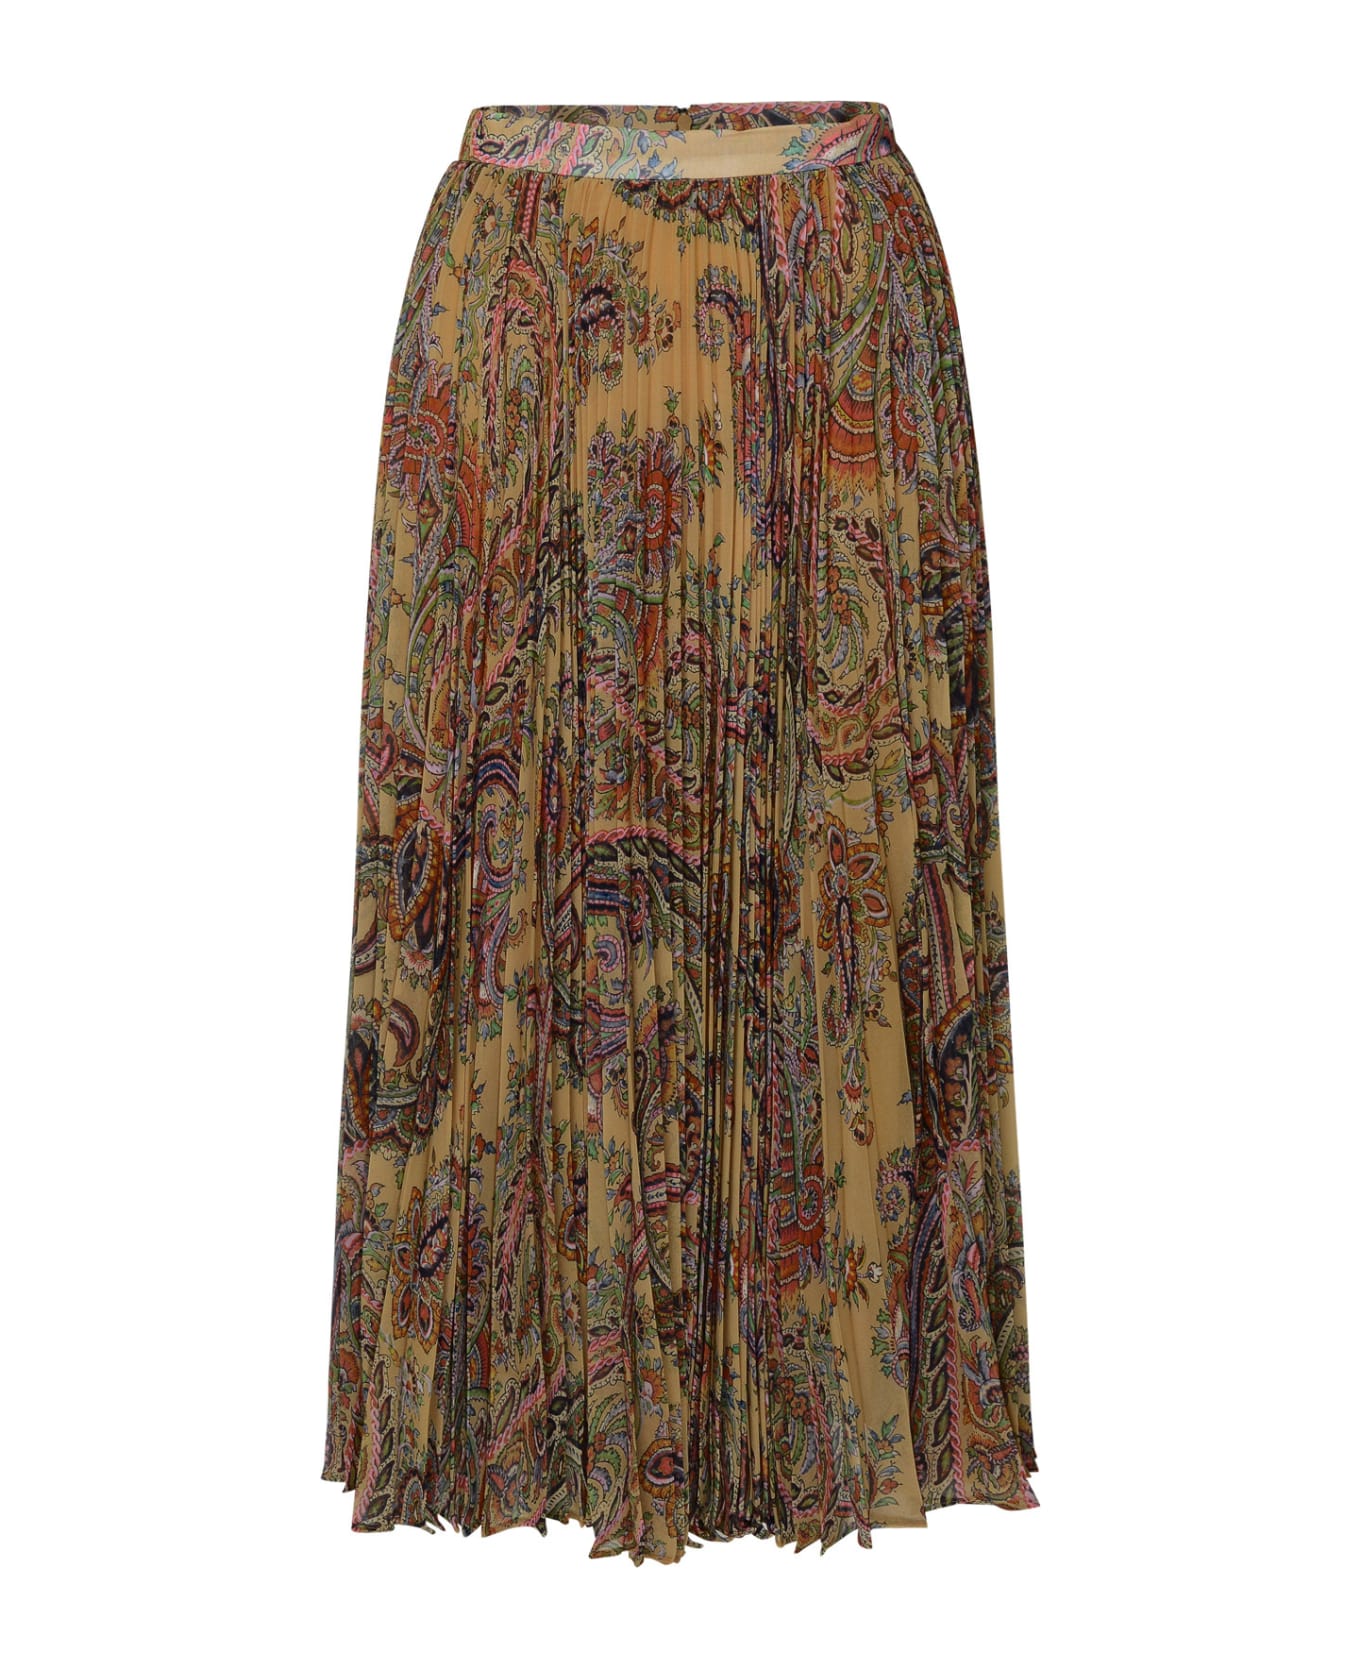 Etro Multicolored Georgette Skirt - Multicolor